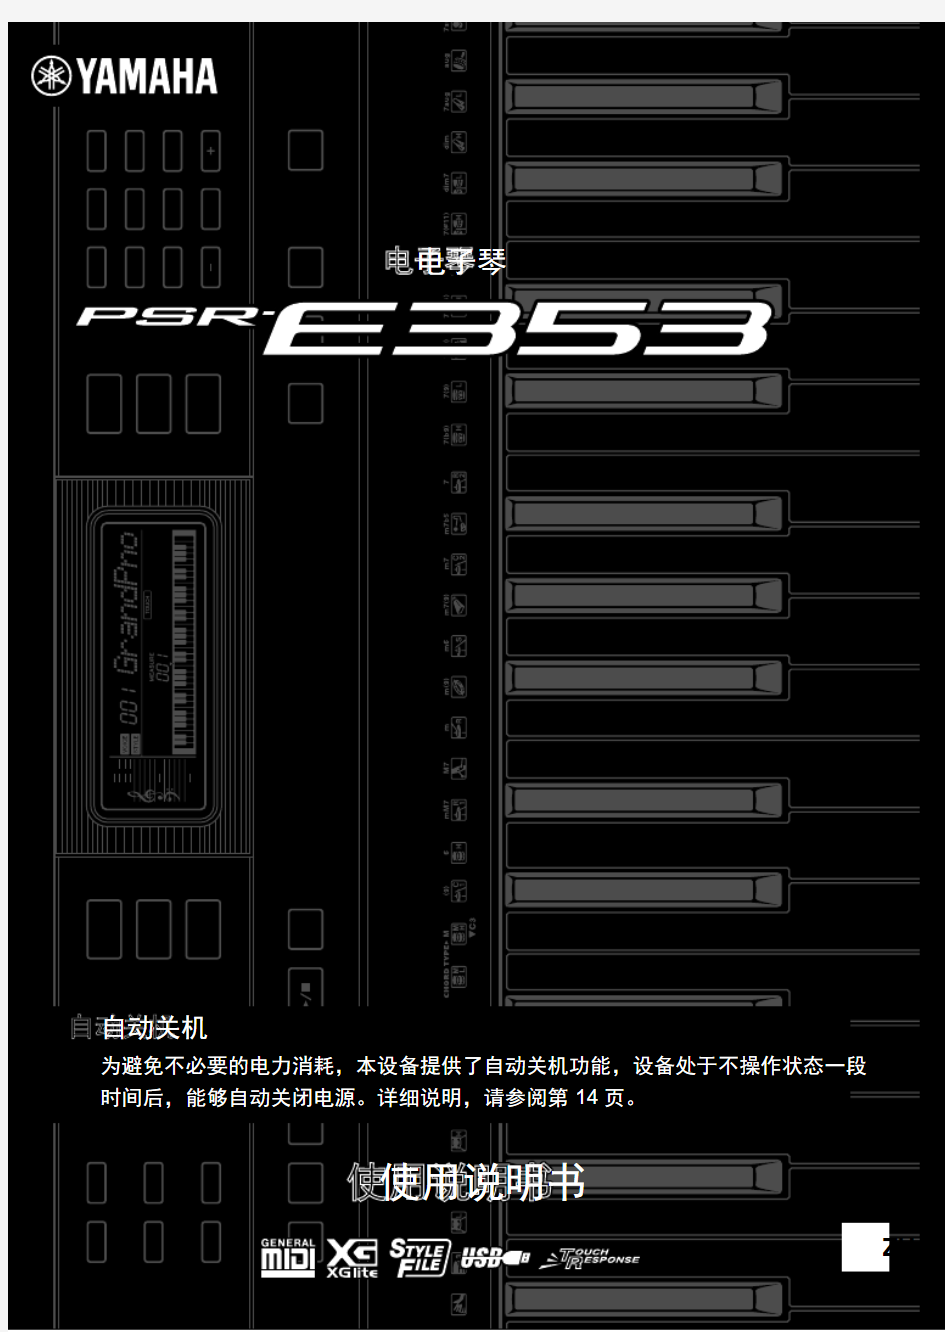 YAMAHA PSR-E353 电子琴中文说明书